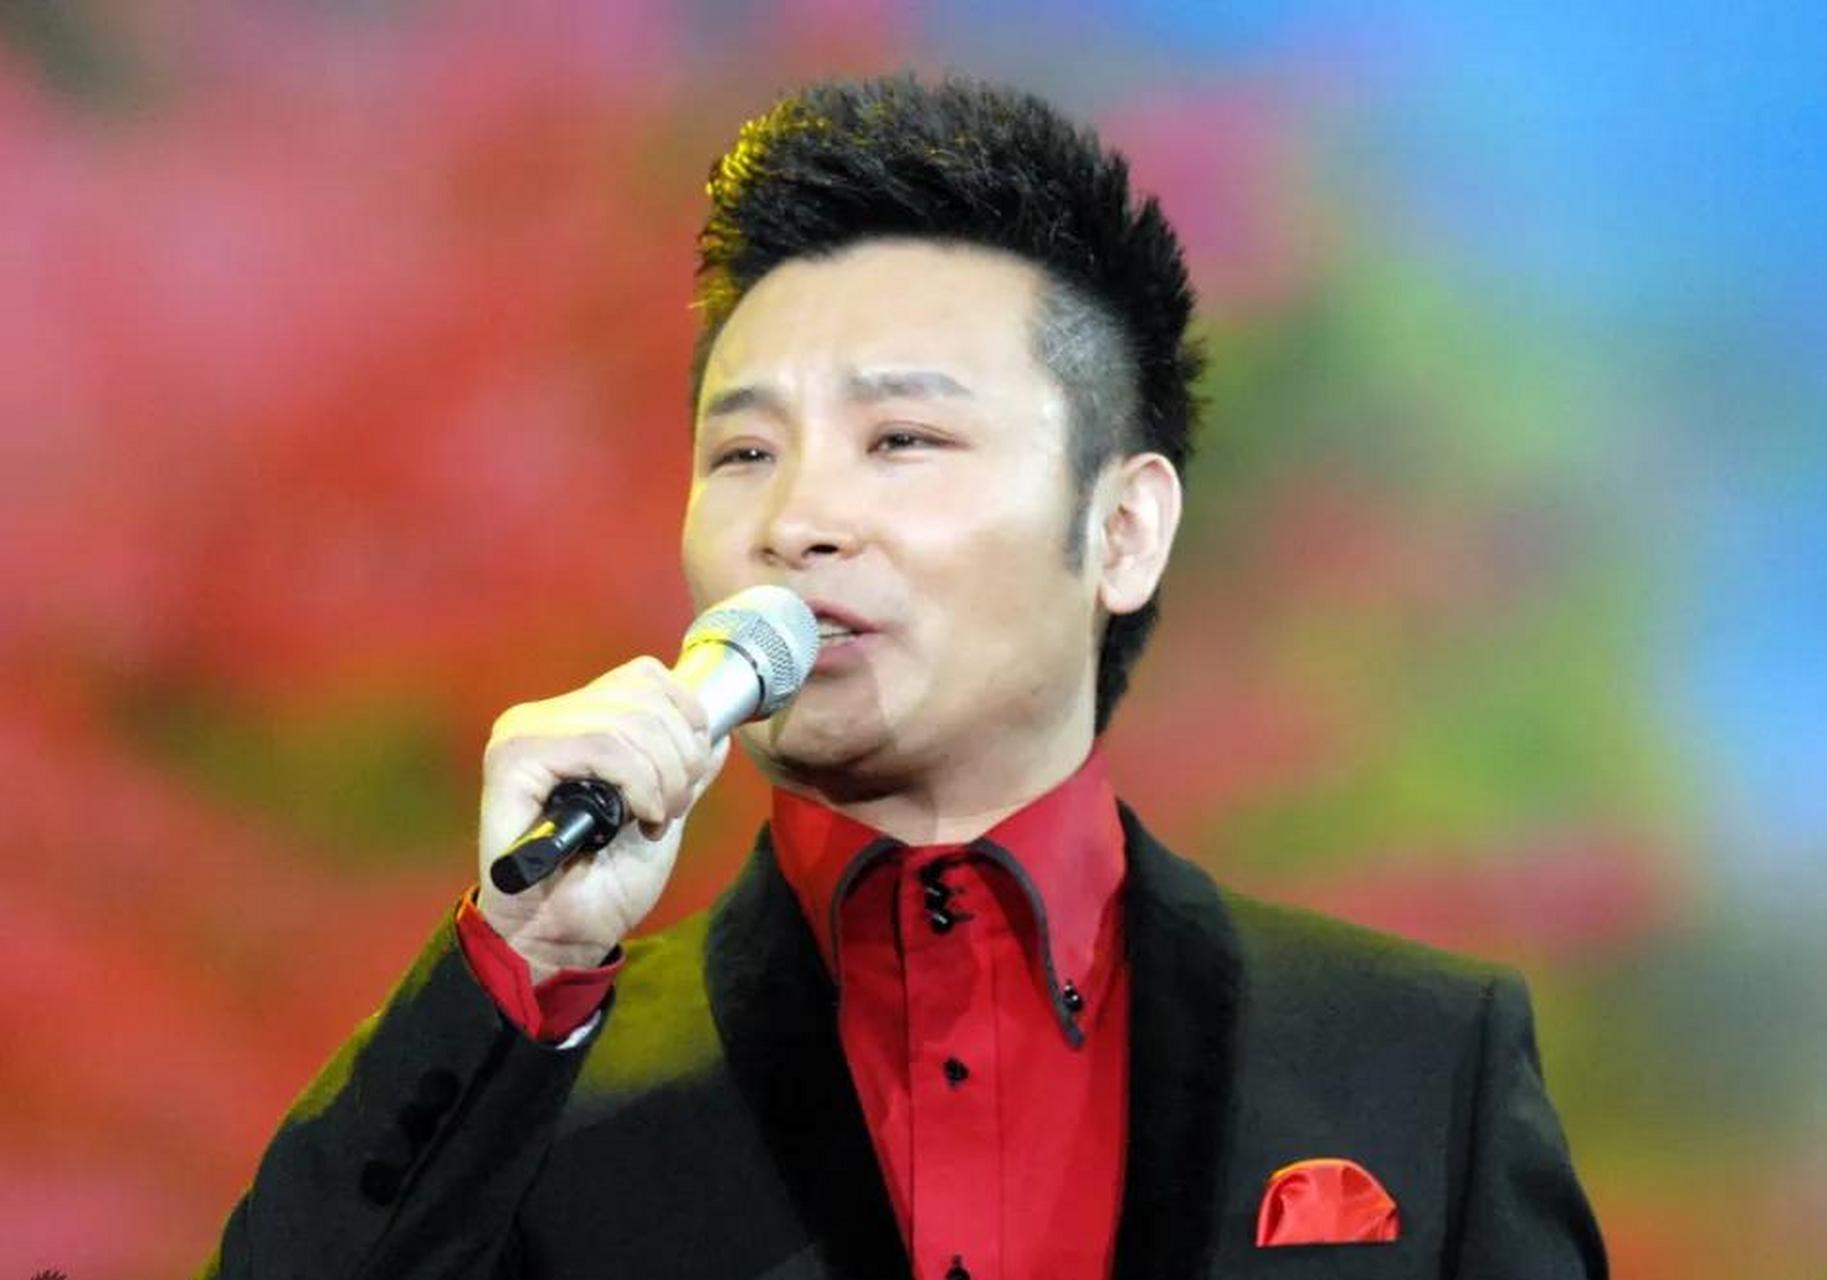 首先,刘和刚是一位国际知名的男高音歌唱家,他在